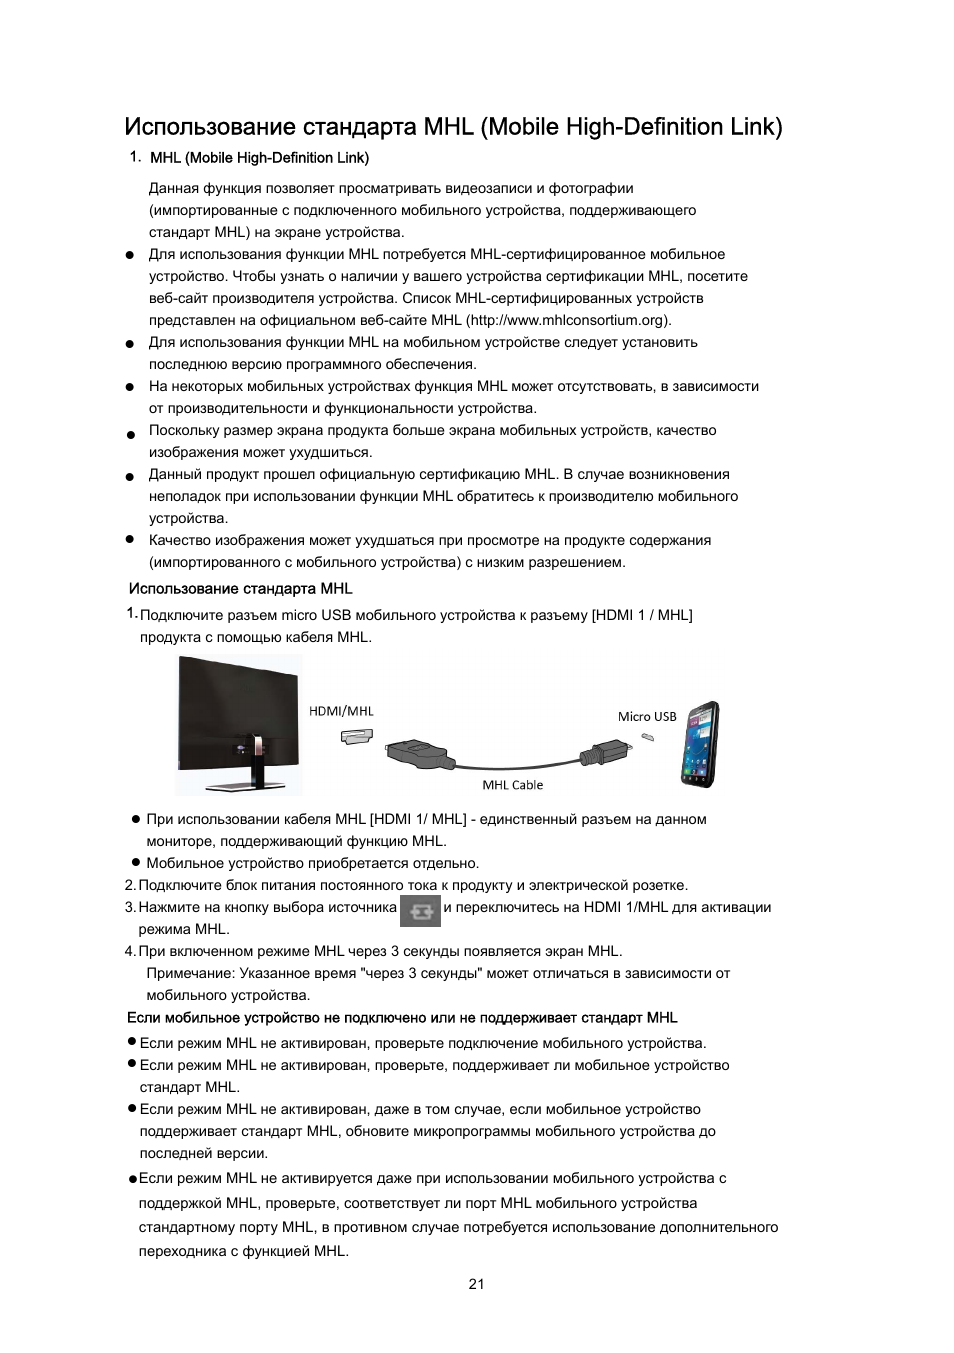 Использование, Стандарта mhl (mobile high-definition link) | Инструкция по эксплуатации AOC I2367FM | Страница 21 / 62